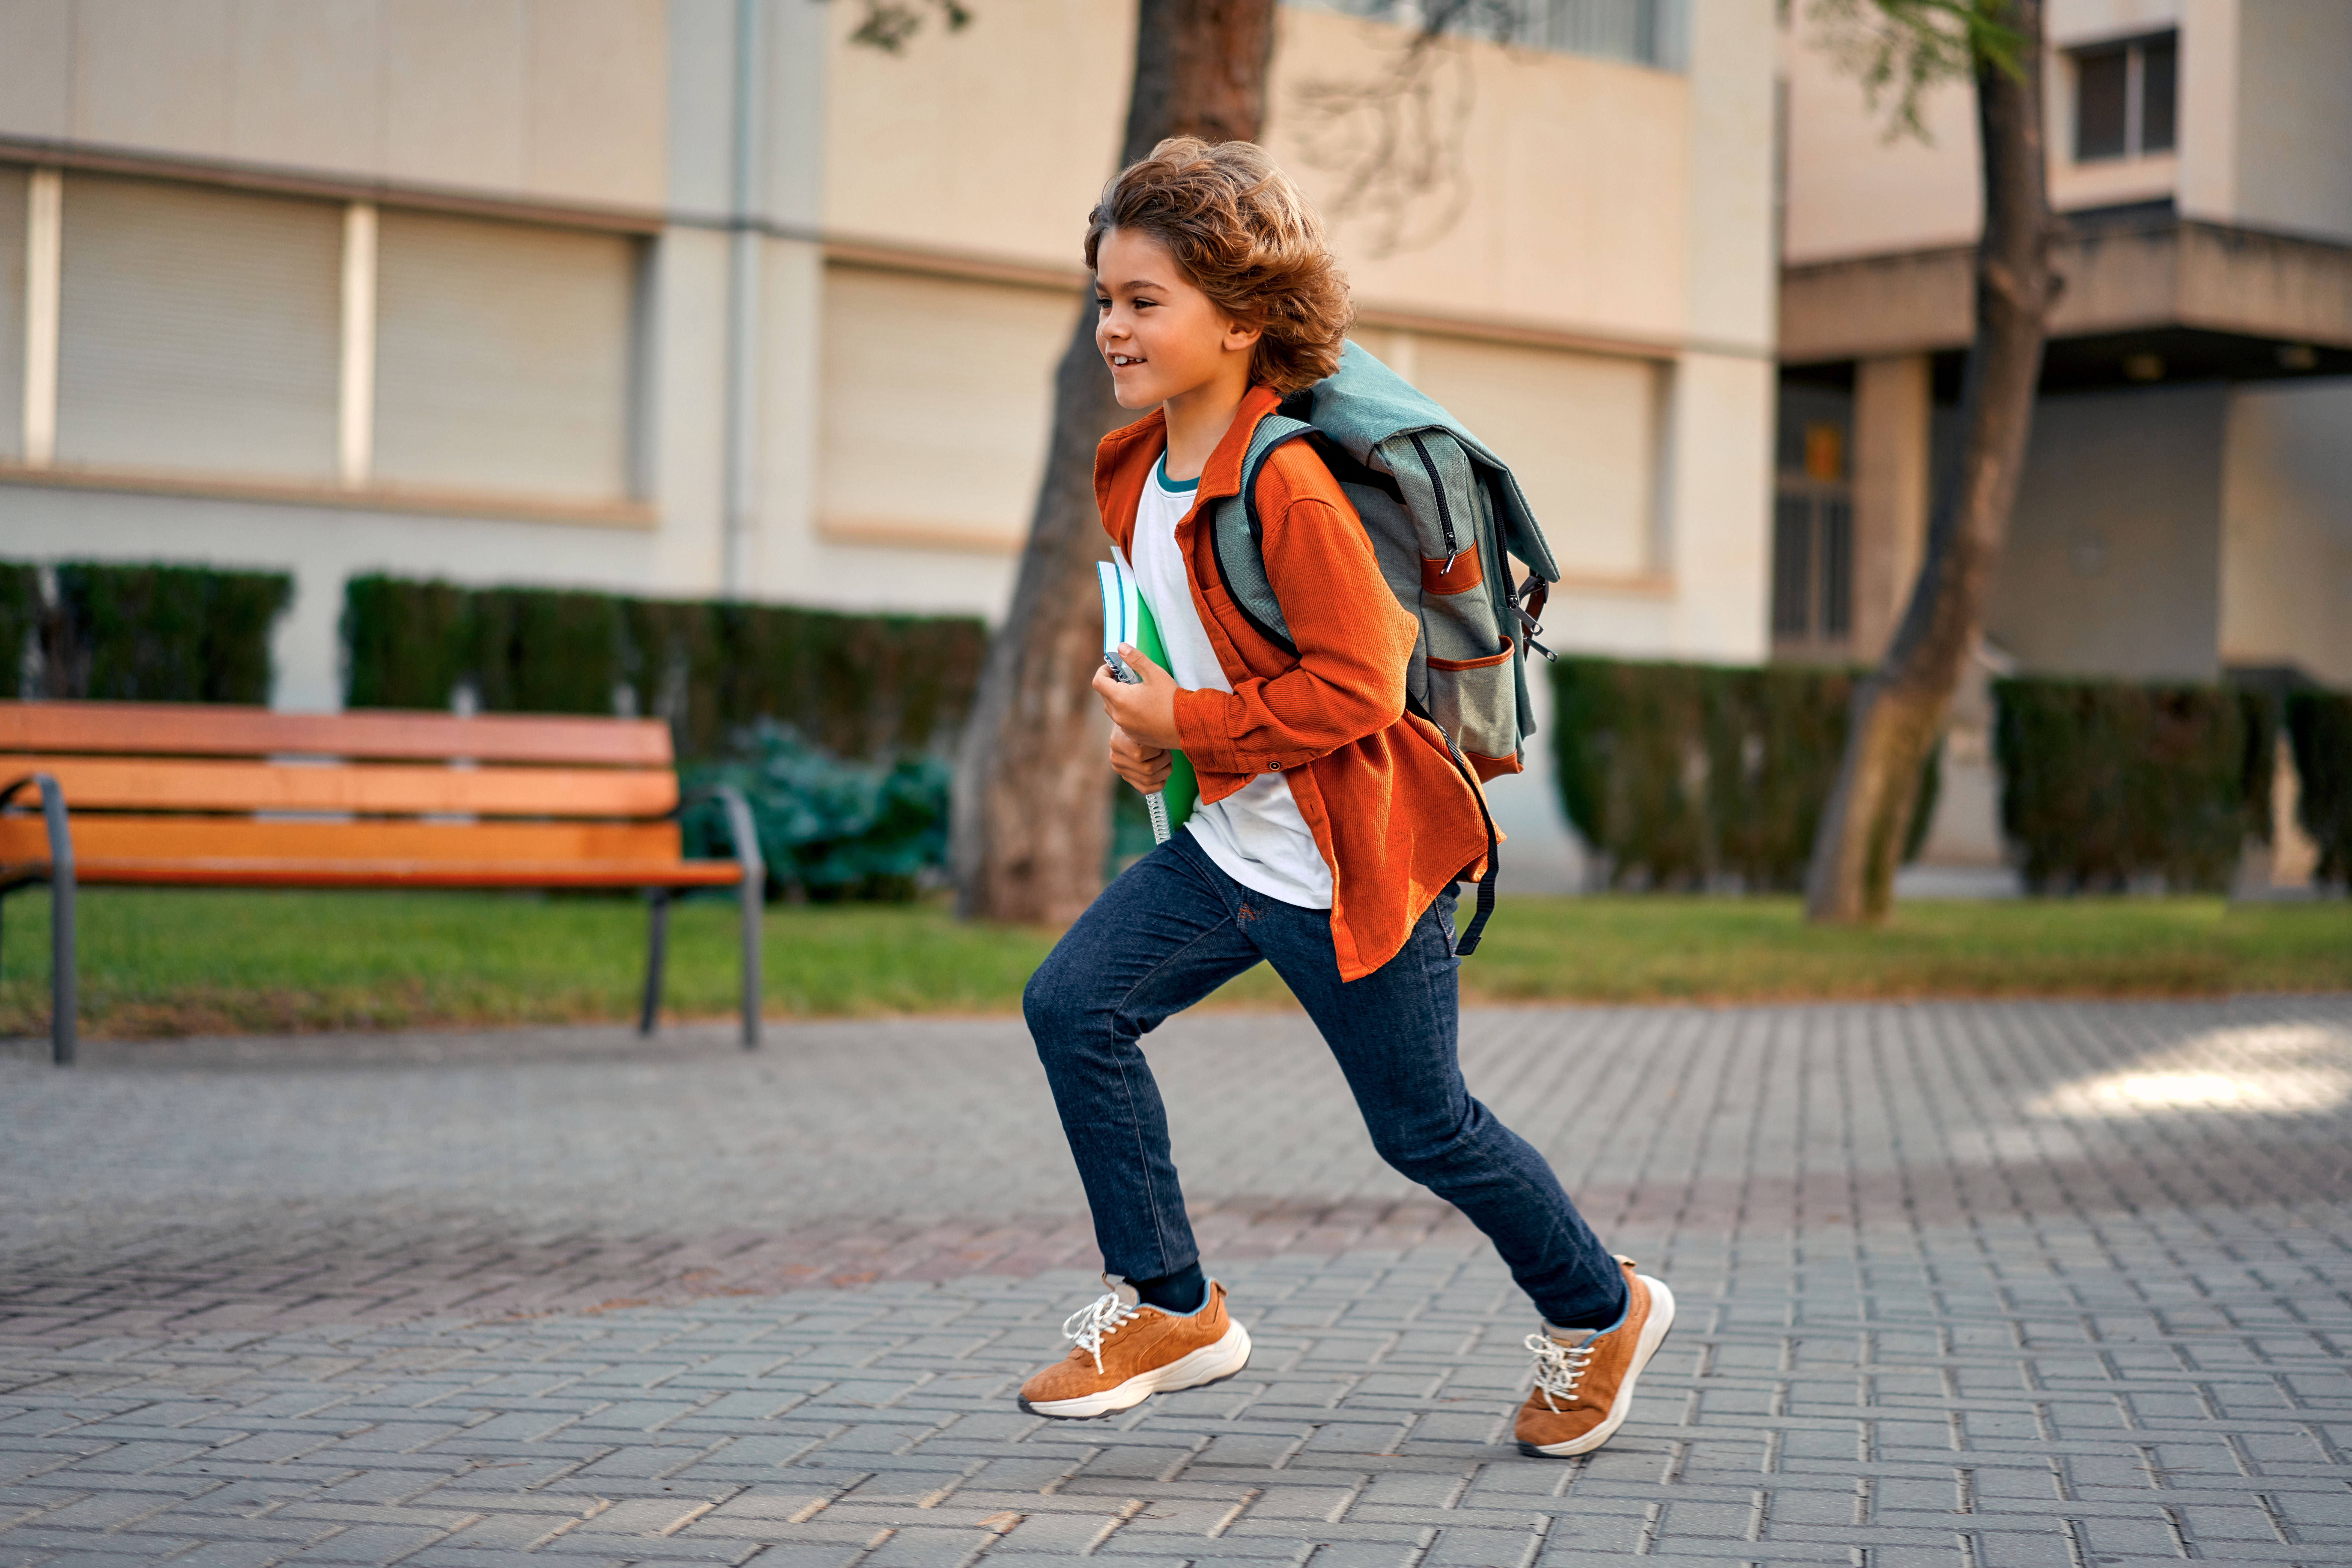 Boy runs to mother. | Source: Shutterstock